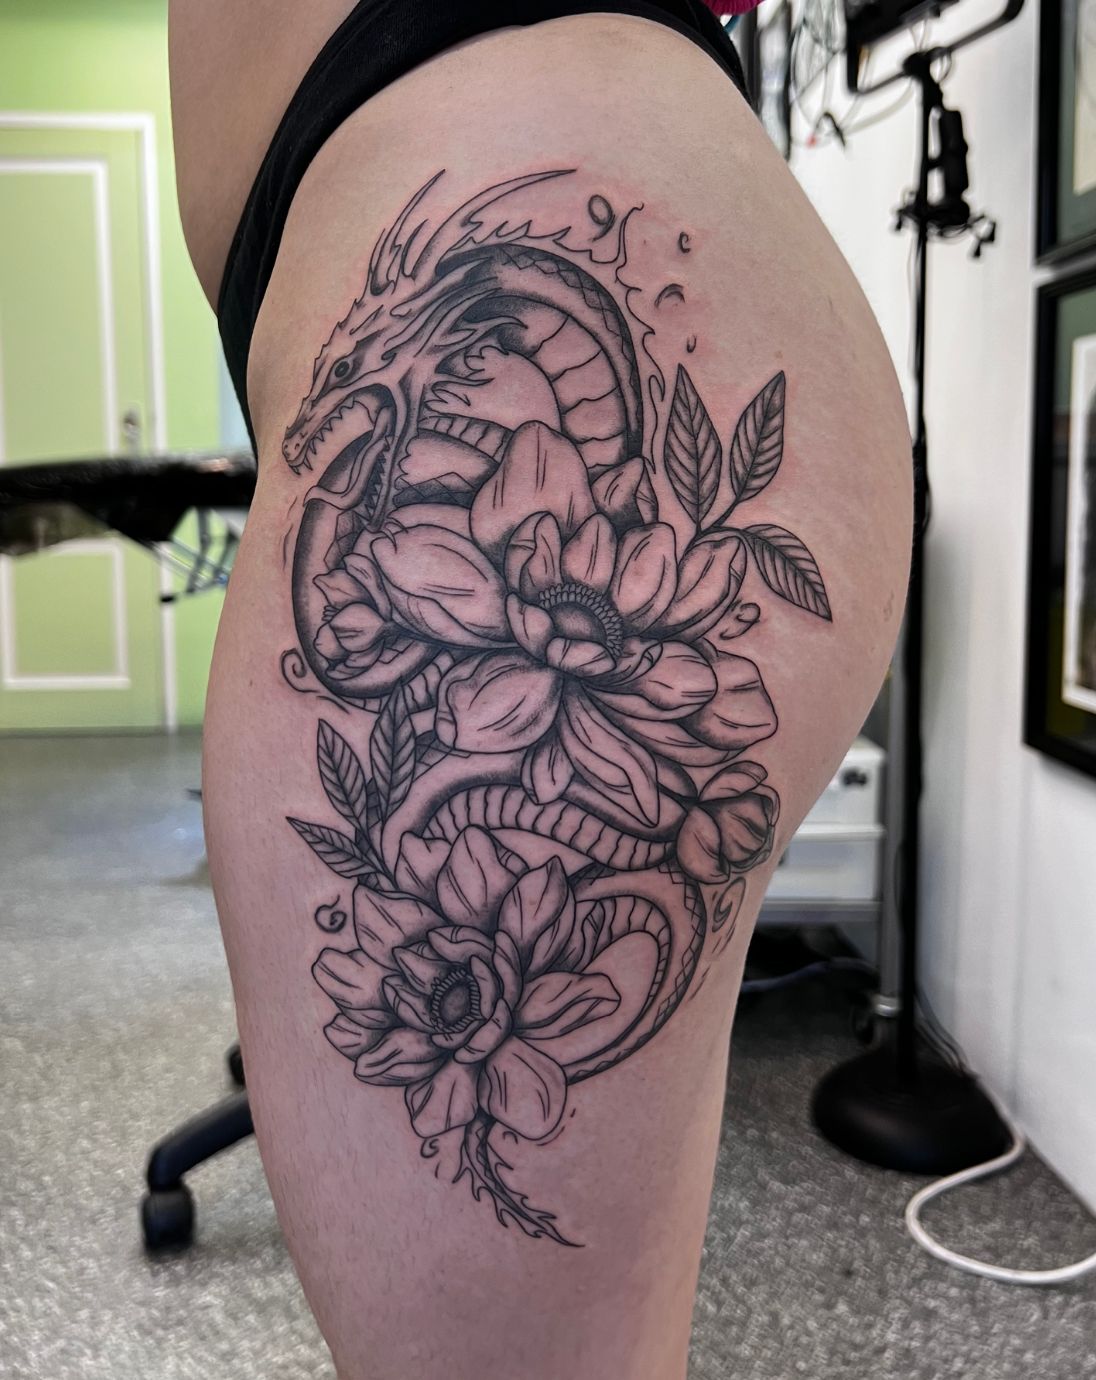 Fierce Dragon with Cherry Blossom Flowers Tattoo - TattooVox Professional  Tattoo Designs Online